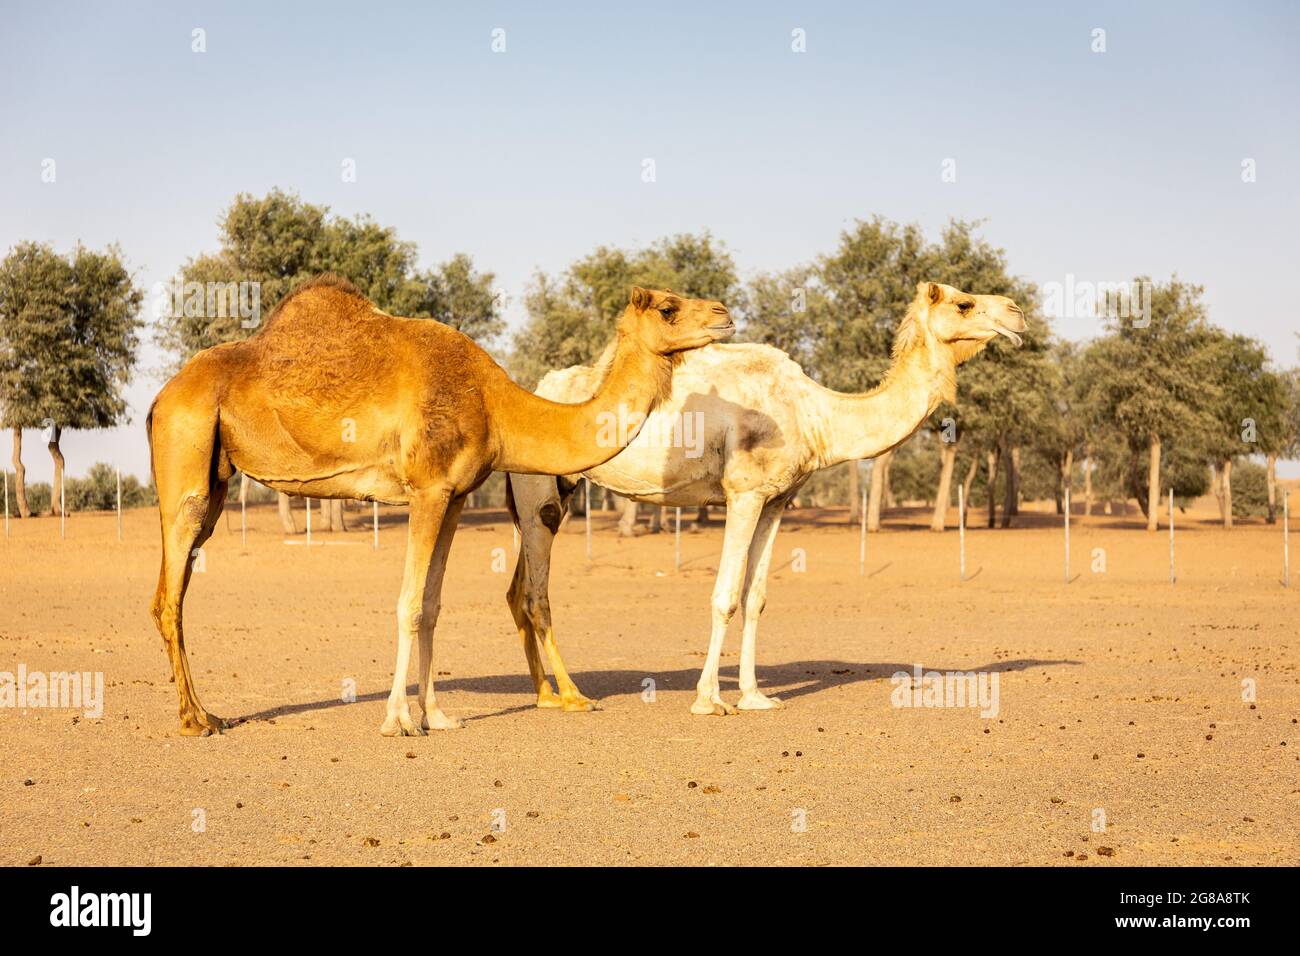 Deux chameaux dromadaires (Camelus dromedarius) se tenant sur le sable dans une ferme désertique, avec forêt de ghaf en arrière-plan, Sharjah, Émirats arabes Unis. Banque D'Images